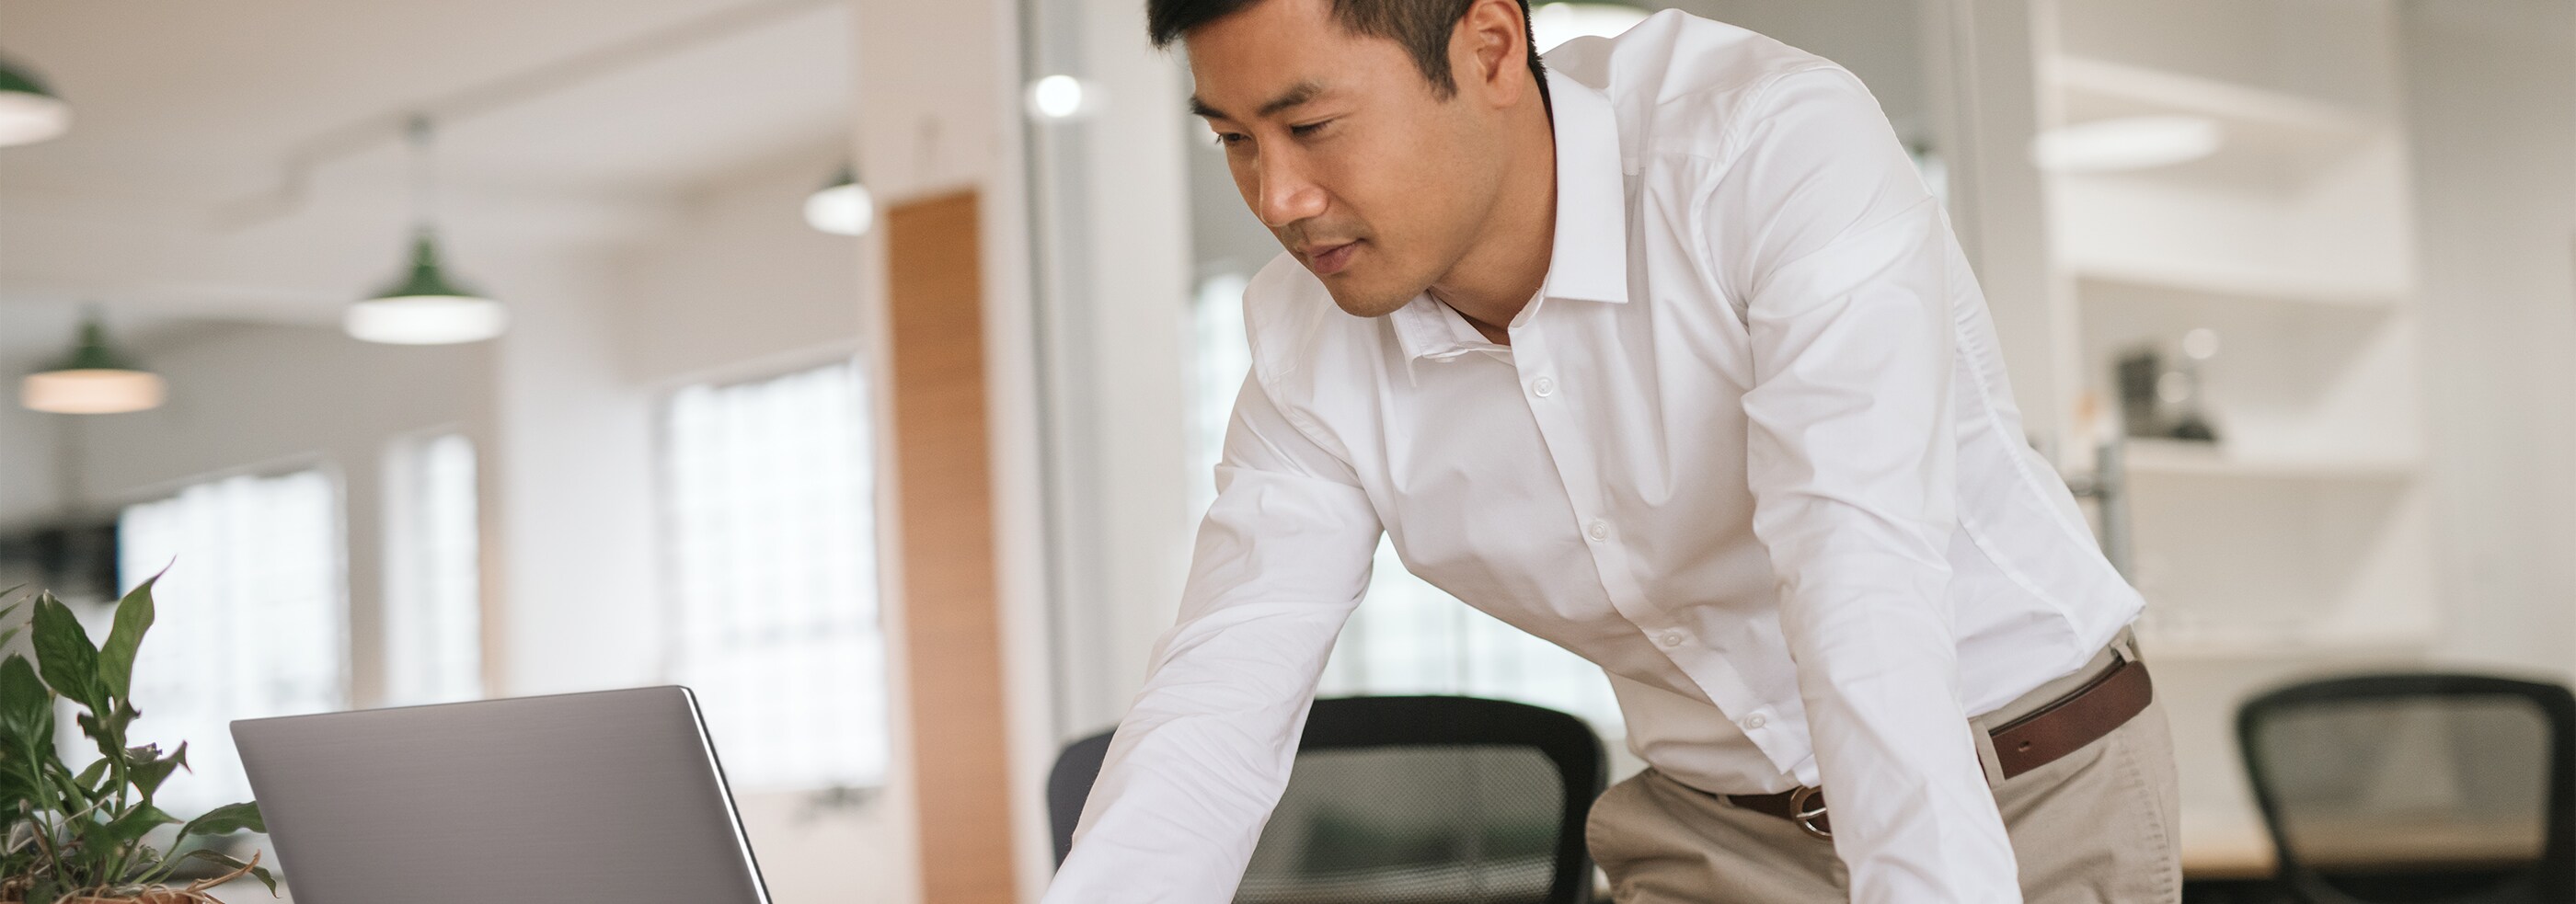 Un homme d’affaires concentré qui travaille sur son ordinateur portable dans un bureau moderne